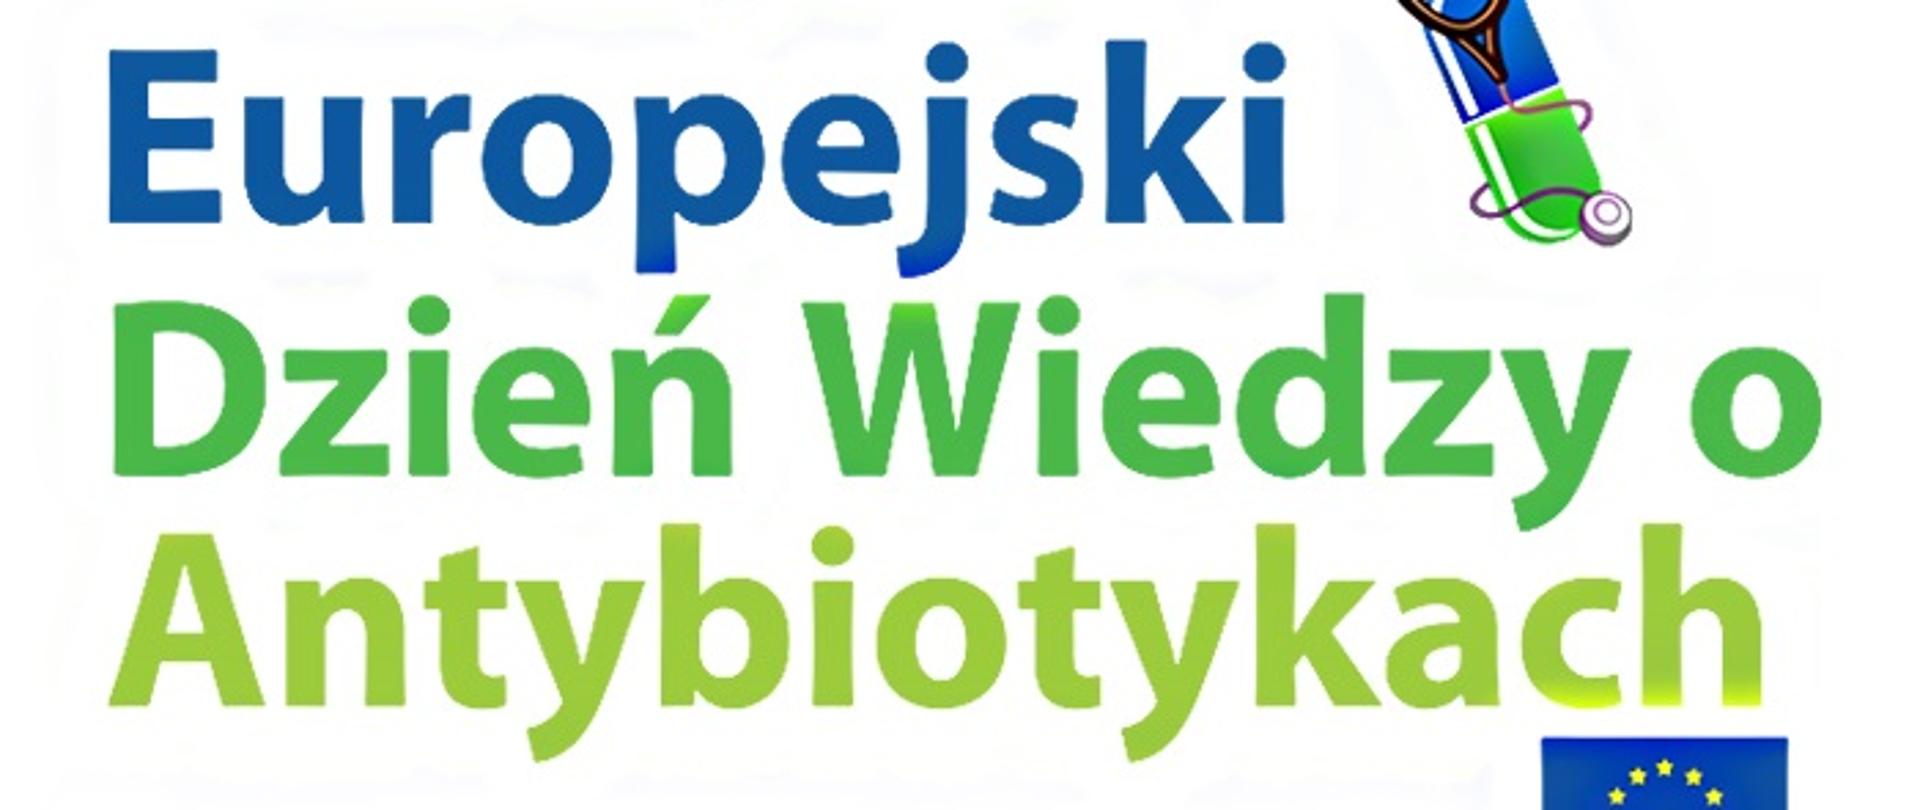 Napis 18 listopada Europejski Dzień Wiedzy o Antybiotykach, Europejska inicjatywa zdrowotna, grafika flaga Unii Europejskiej